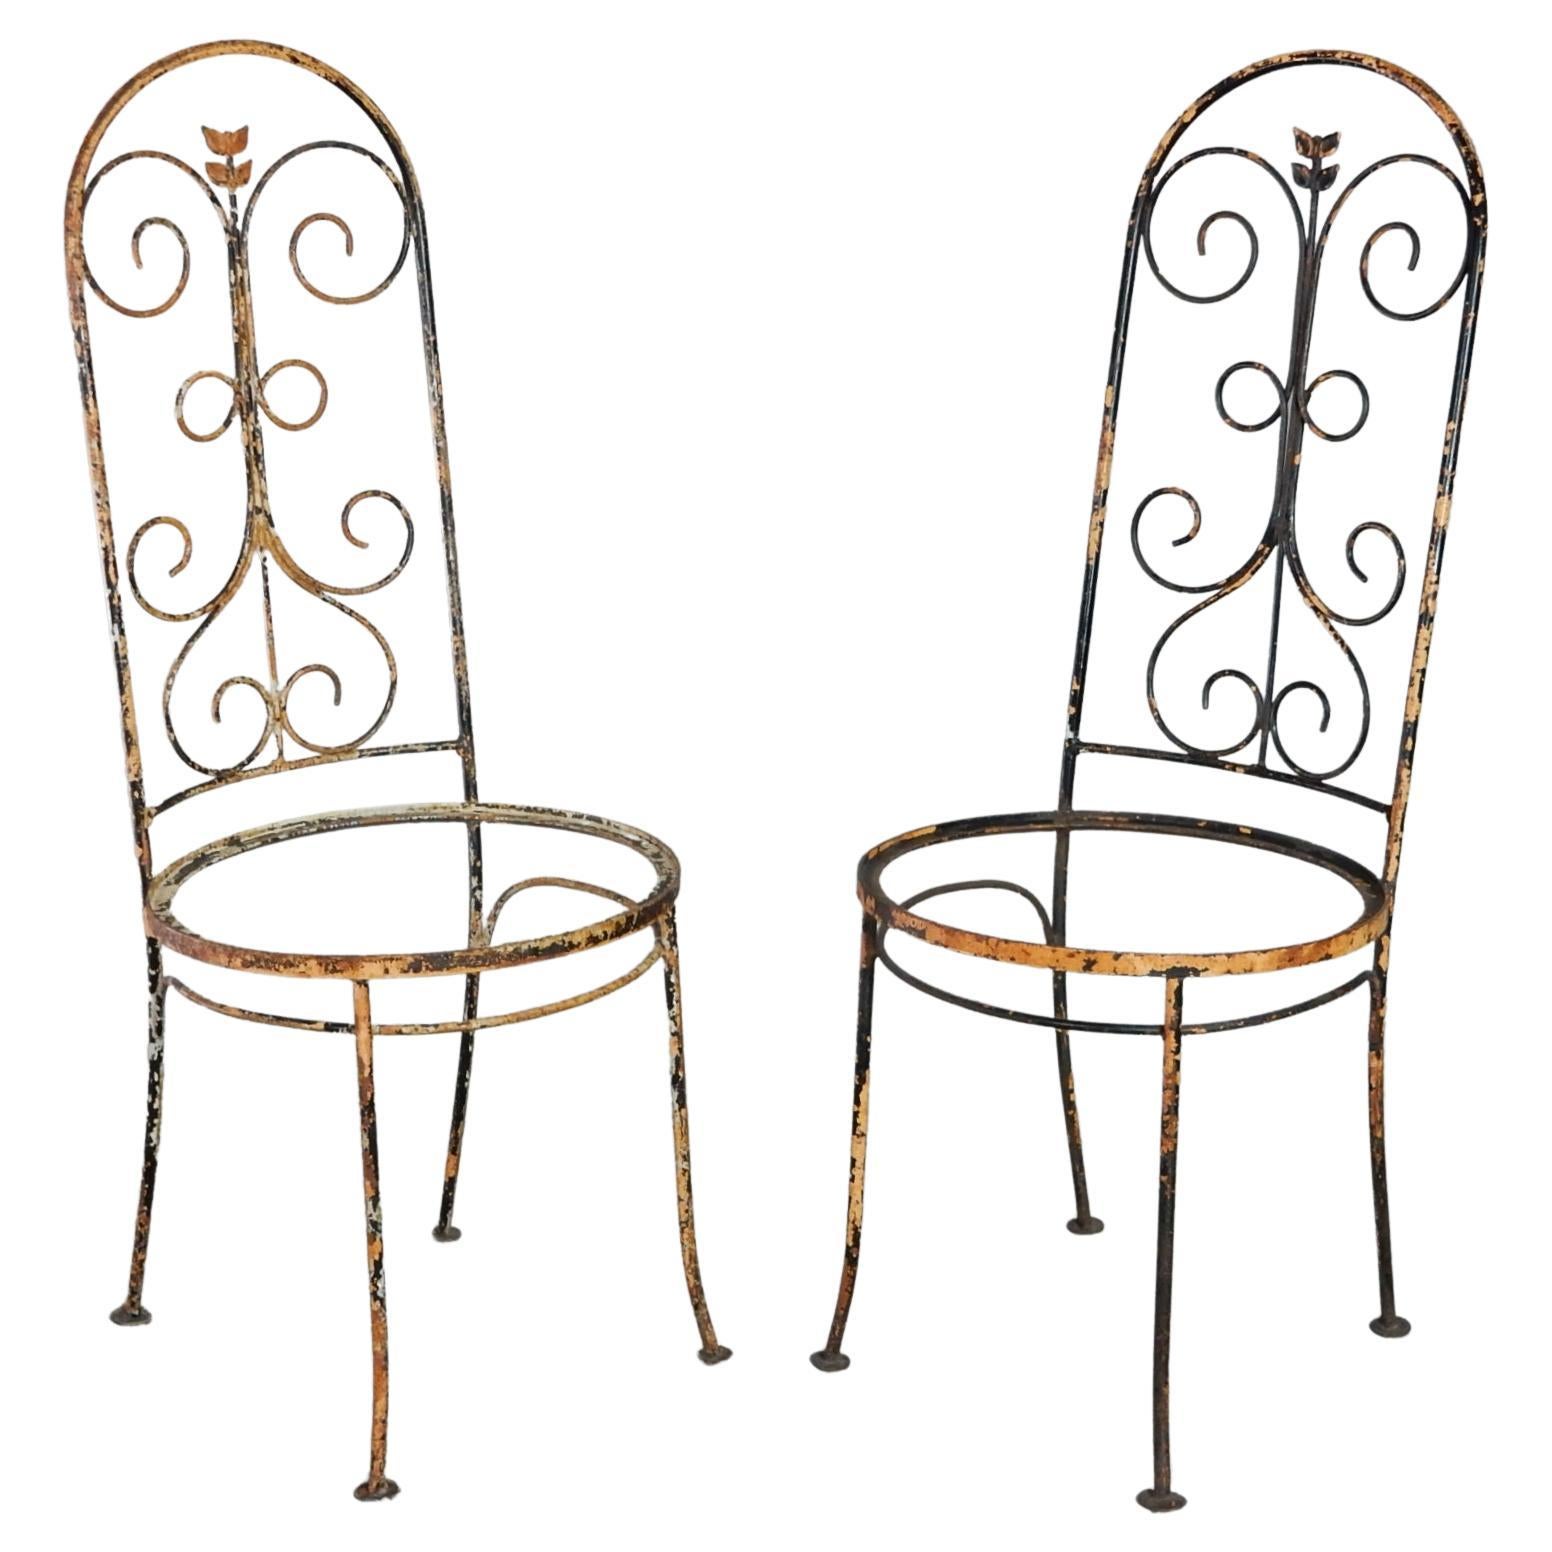 Ensemble de chaises de jardin/patio en fer forgé, datant des années 1940 et provenant de France.
Peinture écaillée et patine parfaitement vieillie.
Les coussins de siège en bois rembourrés sont inclus mais ne sont pas représentés. 
Prêt à être